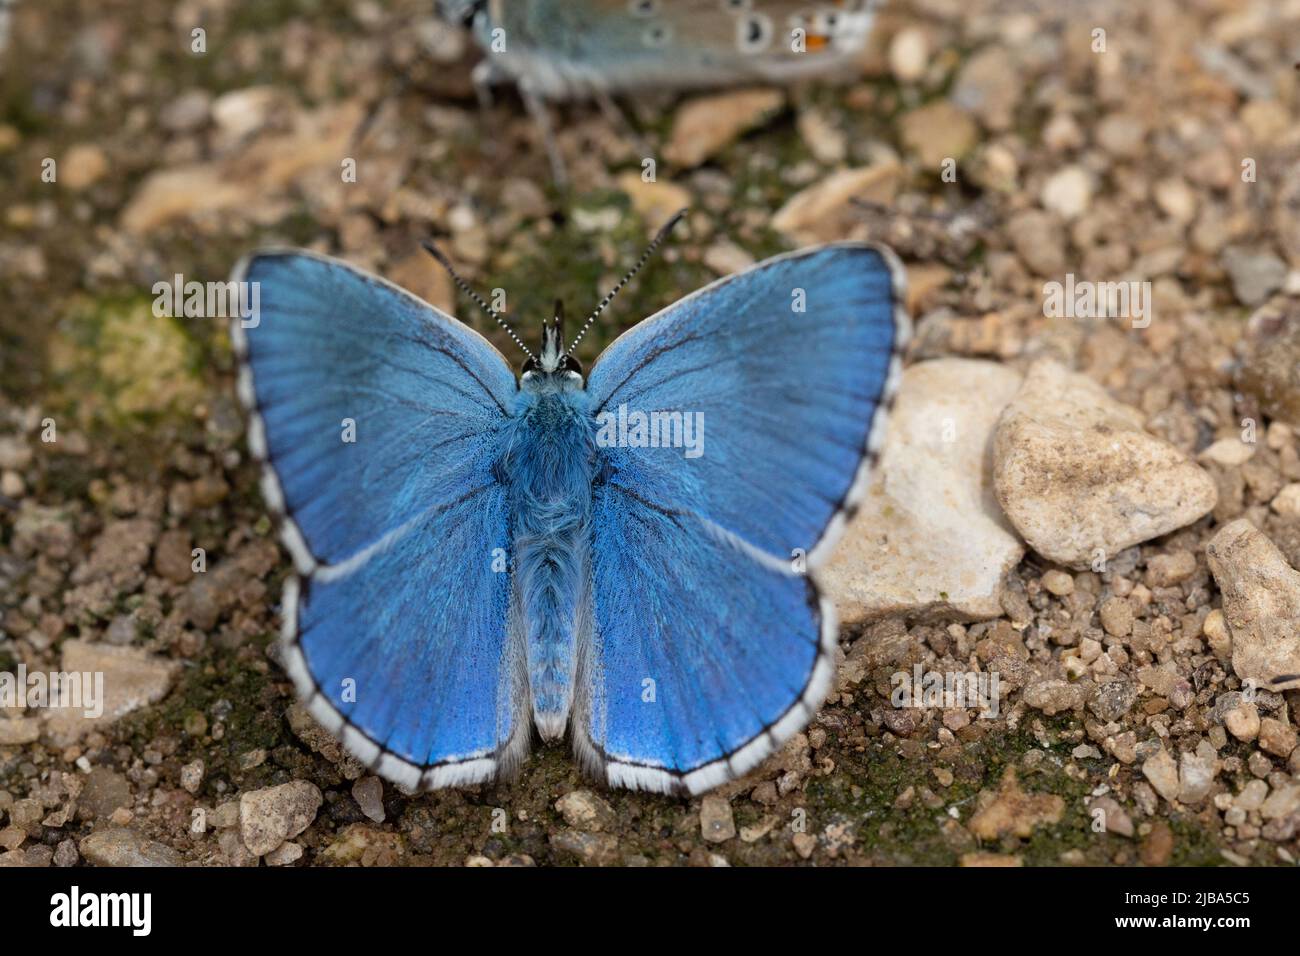 L'eau potable du papillon bleu Chalkhill sur la surface de sable près d'une rivière Banque D'Images